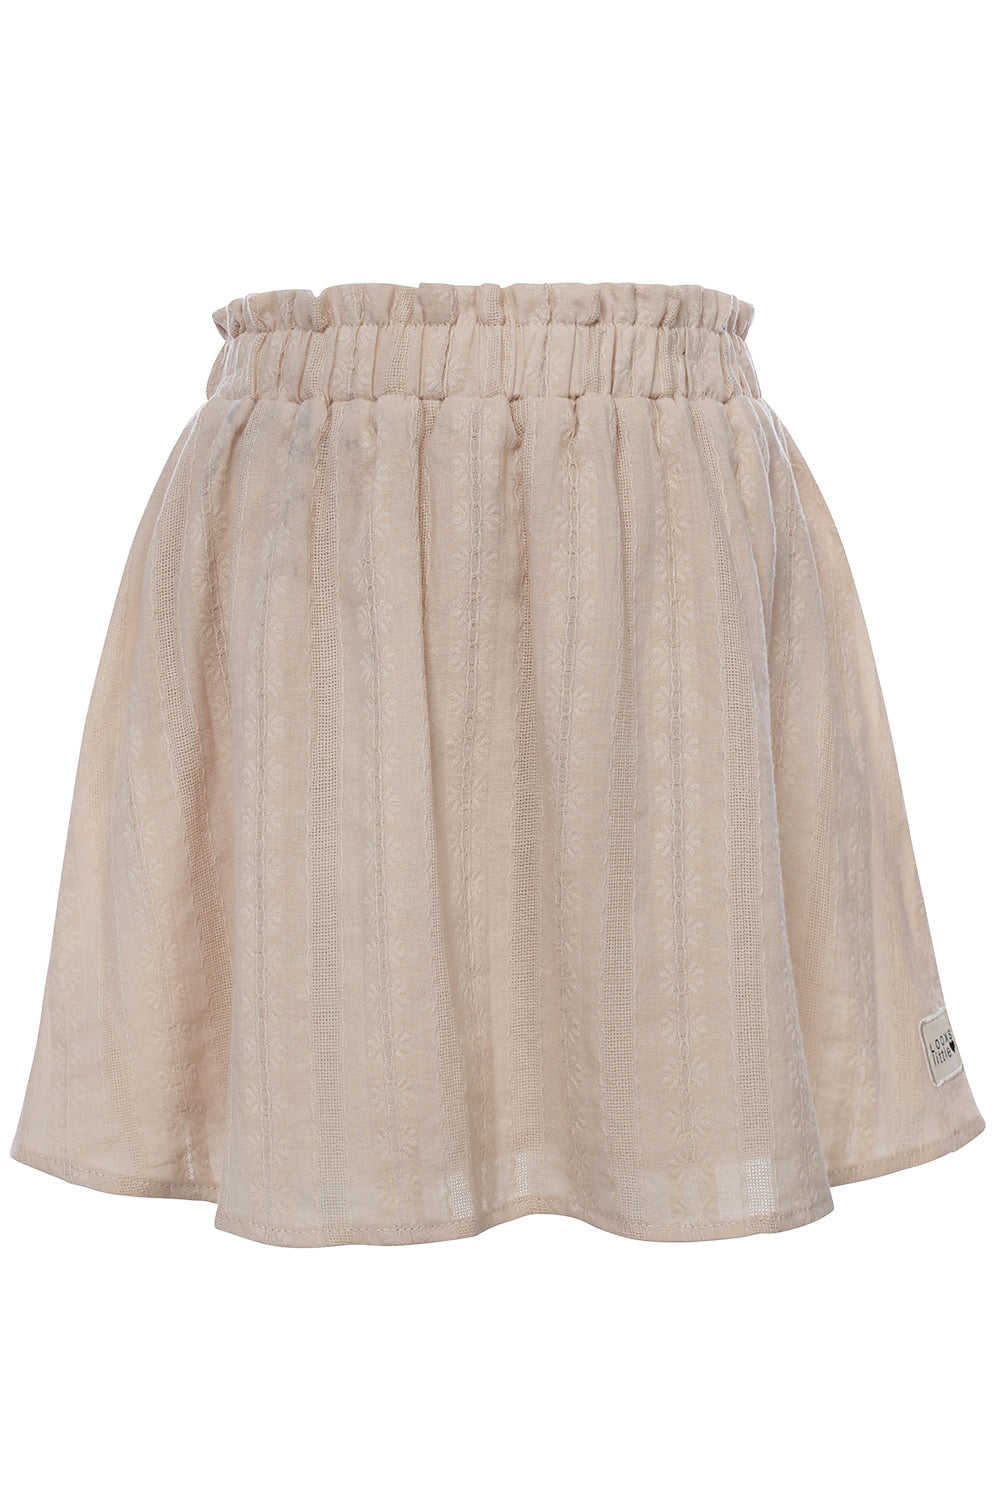 LOOXS Little Fancy Woven Skirt